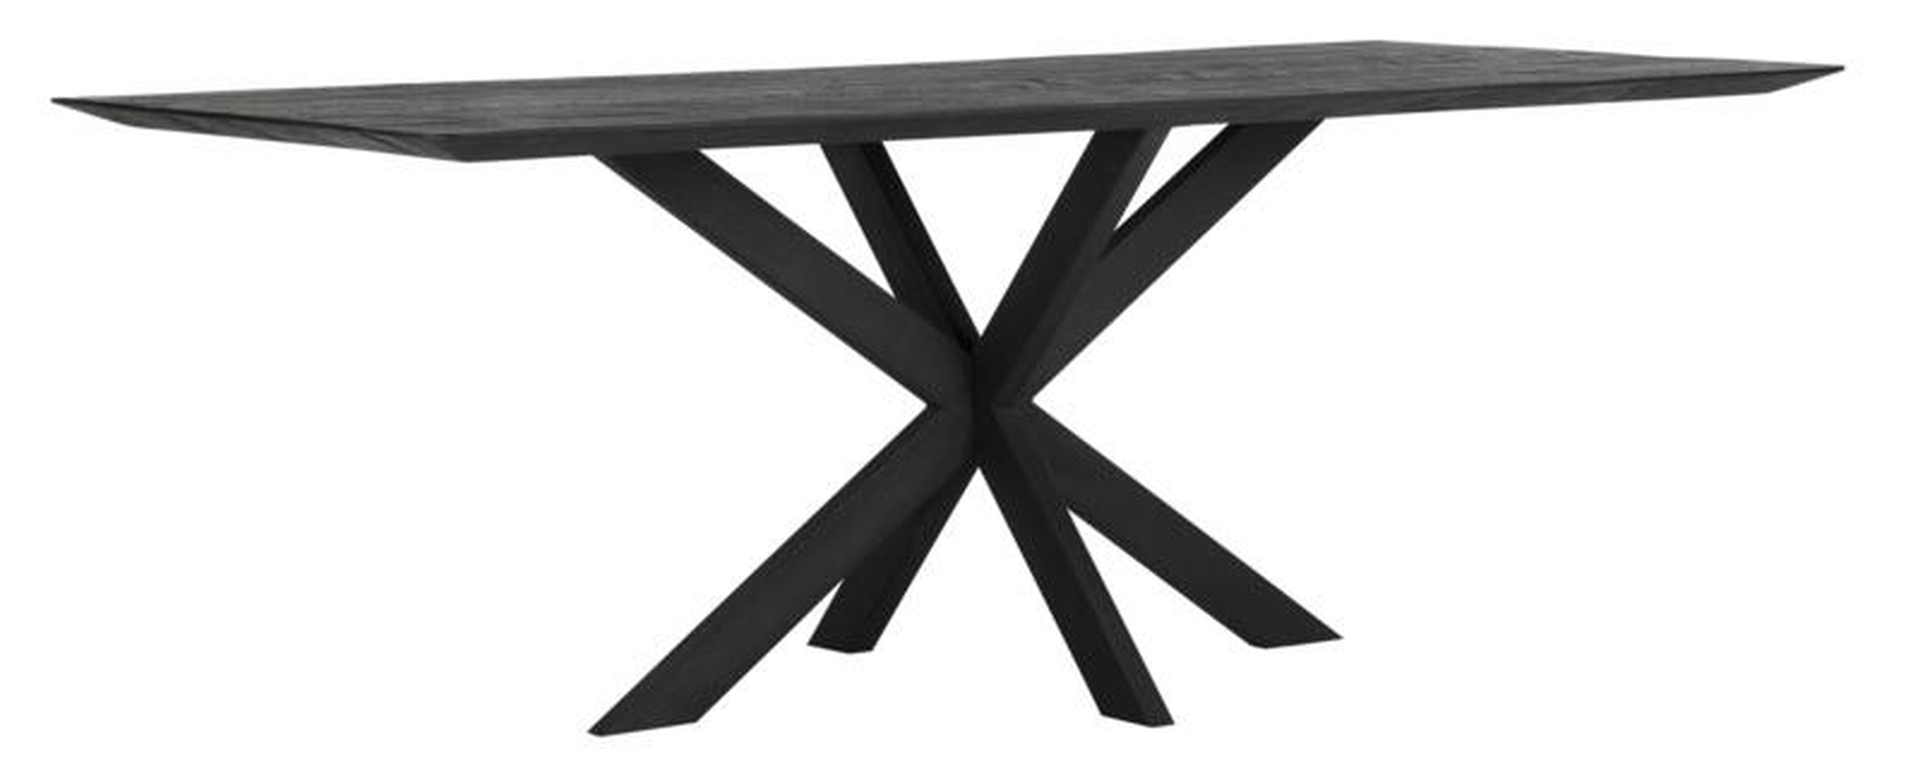 Der Esstisch Curves überzeugt mit seinem modernem aber auch massivem Design. Gefertigt wurde der Tisch aus recyceltem Teakholz, welches einen schwarzen Farbton besitzt. Das Gestell ist aus Metall und ist Schwarz. Der Tisch hat eine Länge von 210 cm.